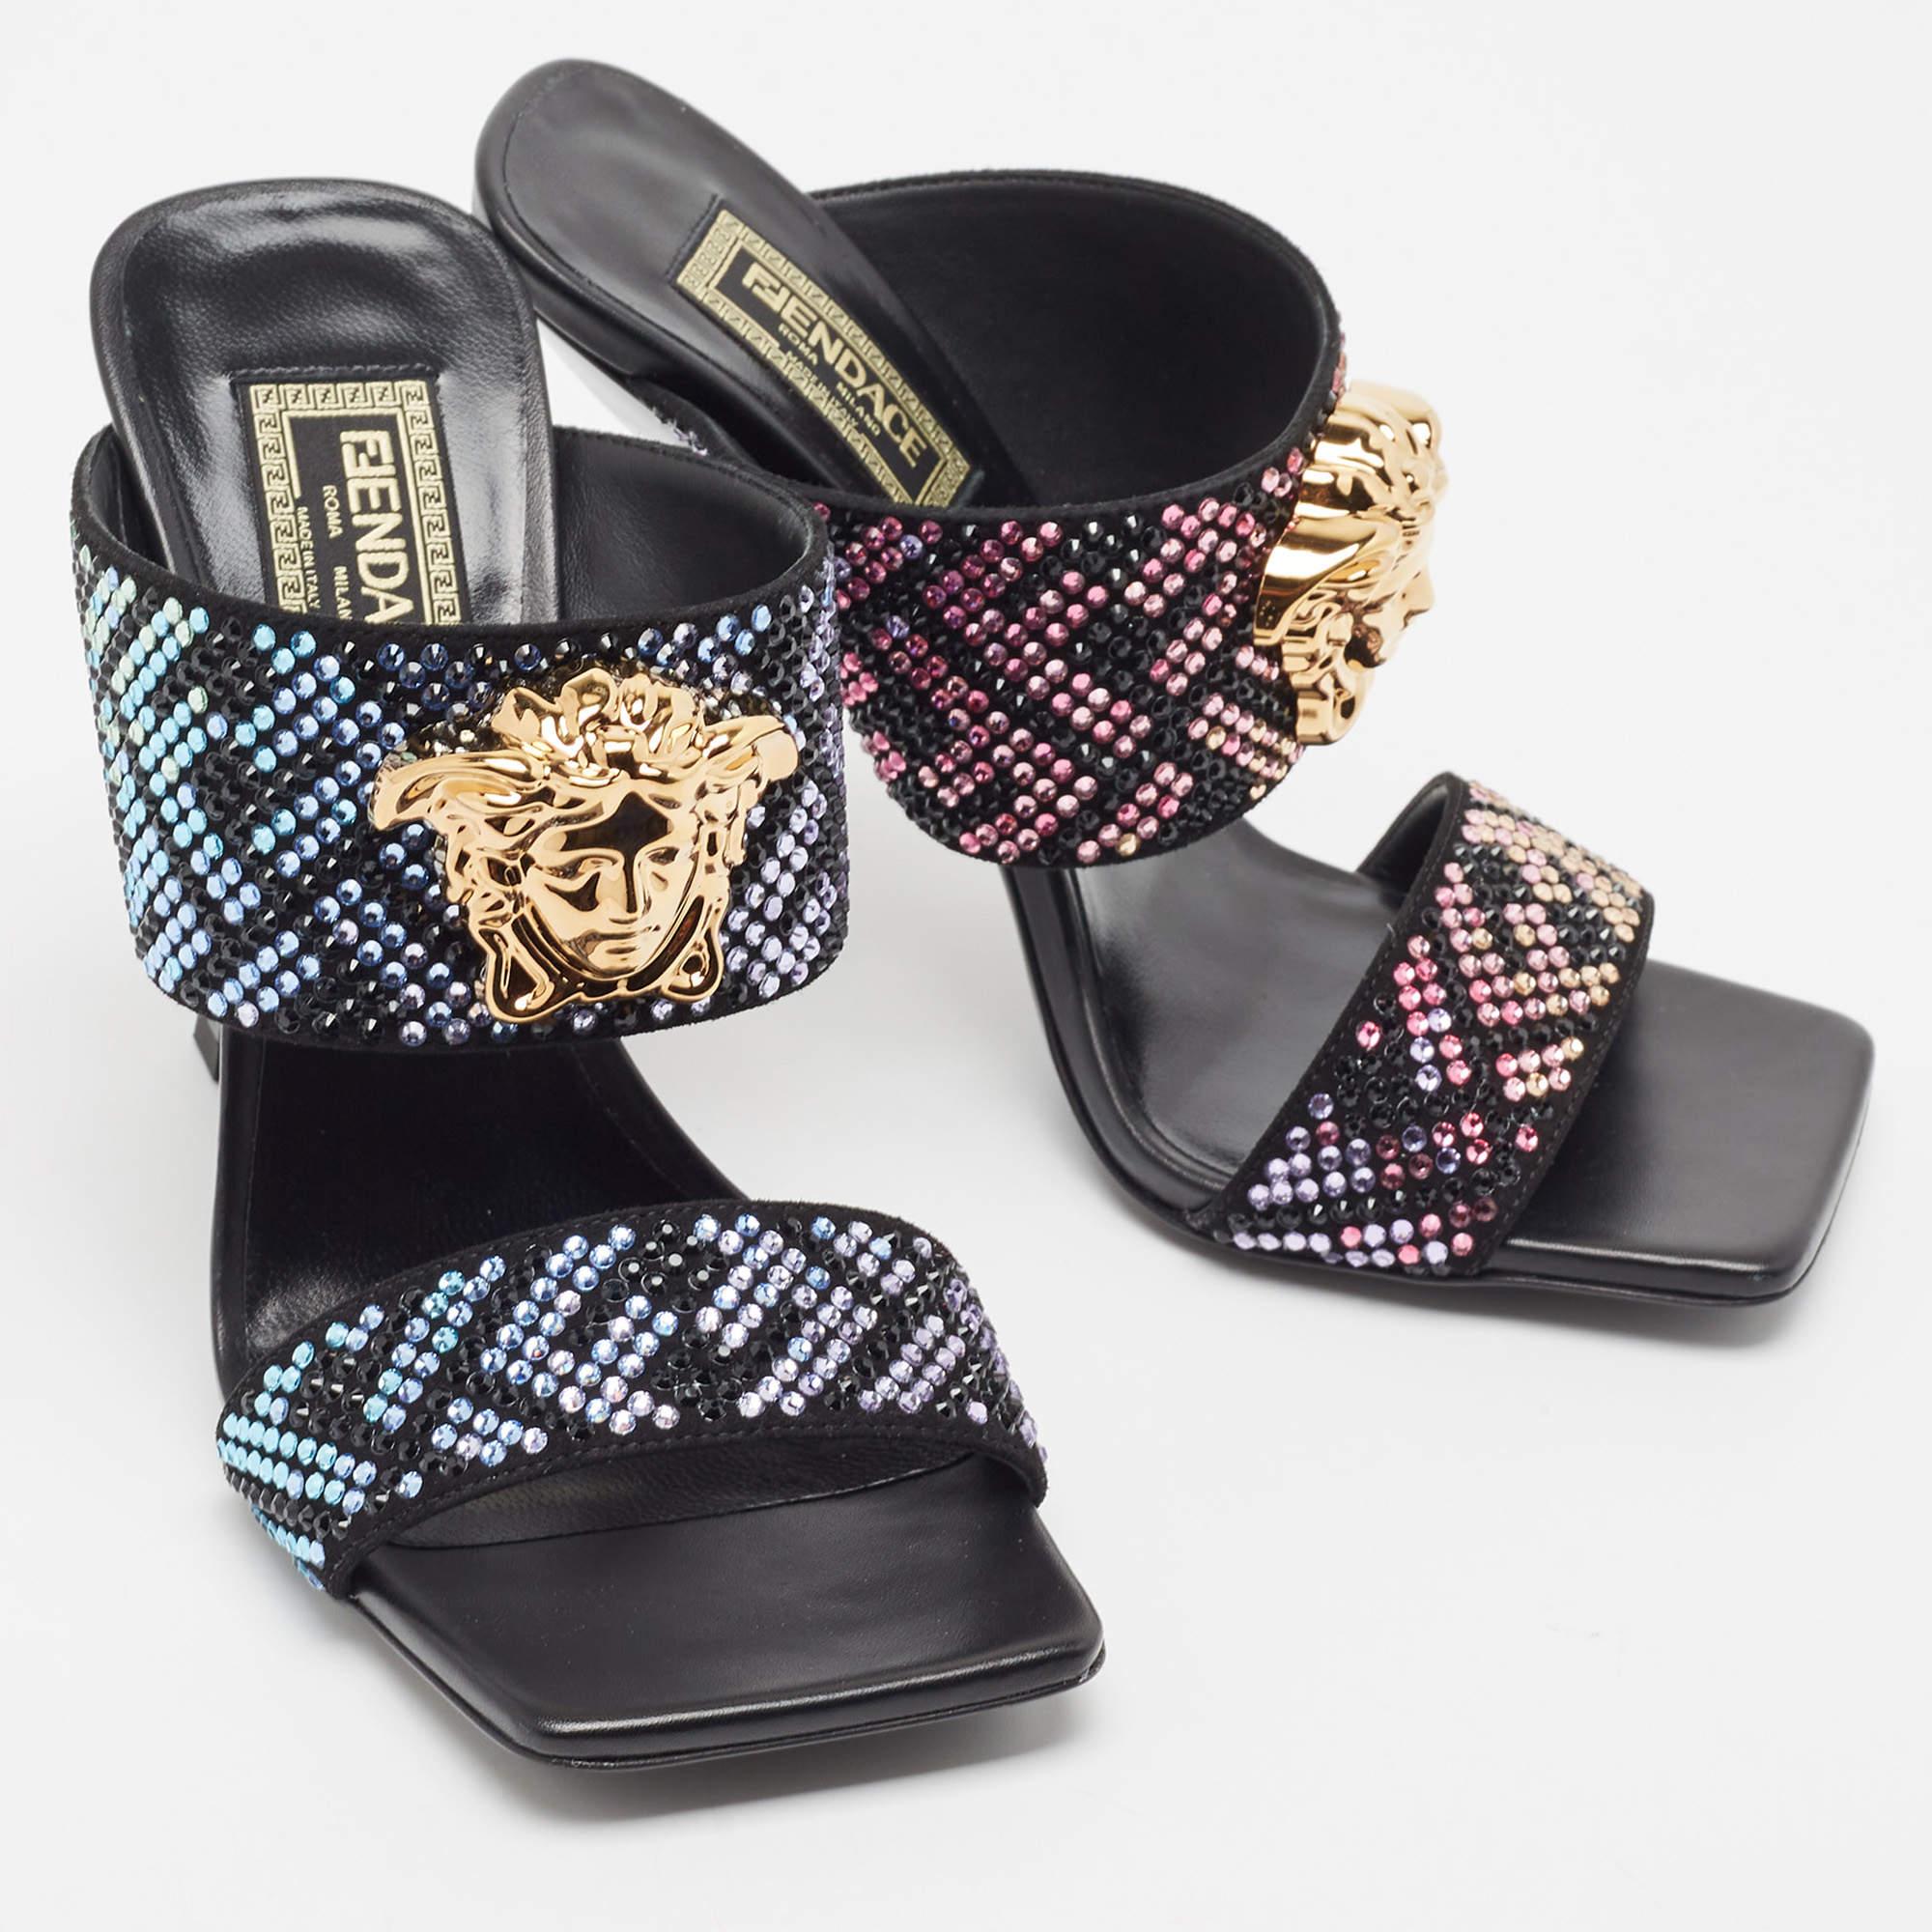 Women's Fendi x Versace Fendace Black/Gold Suede Crystal Embellished Slide Sandals Size 